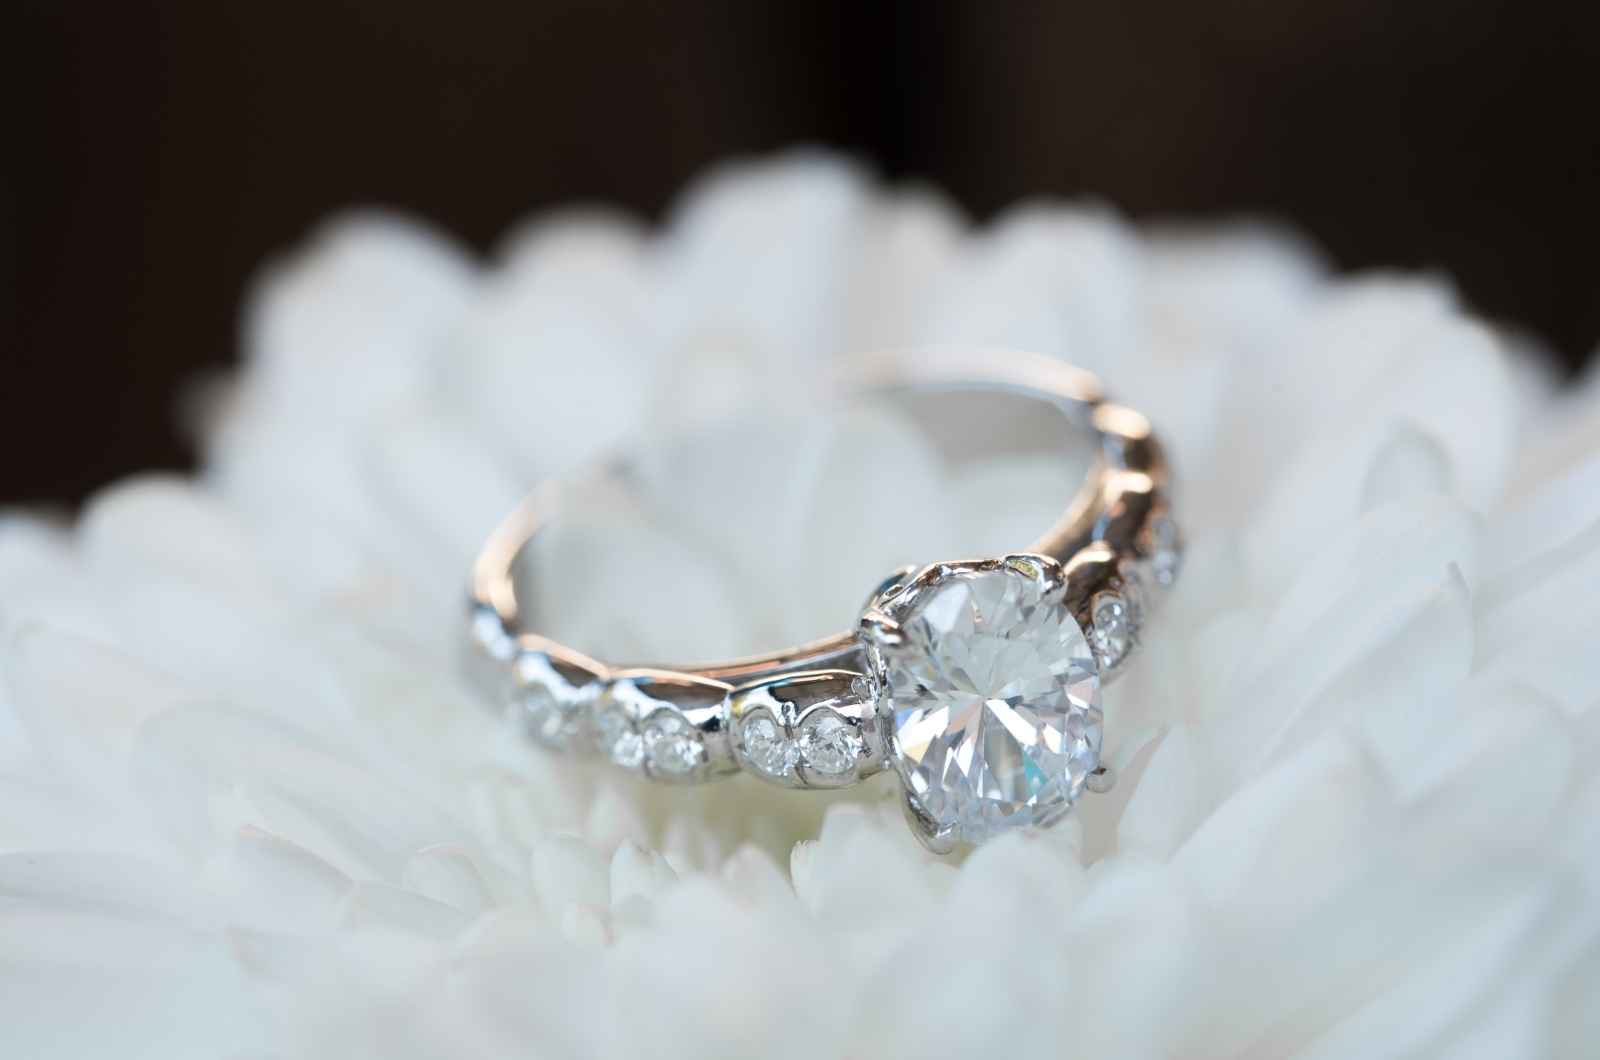 כיצד לבחור טבעת אירוסין?